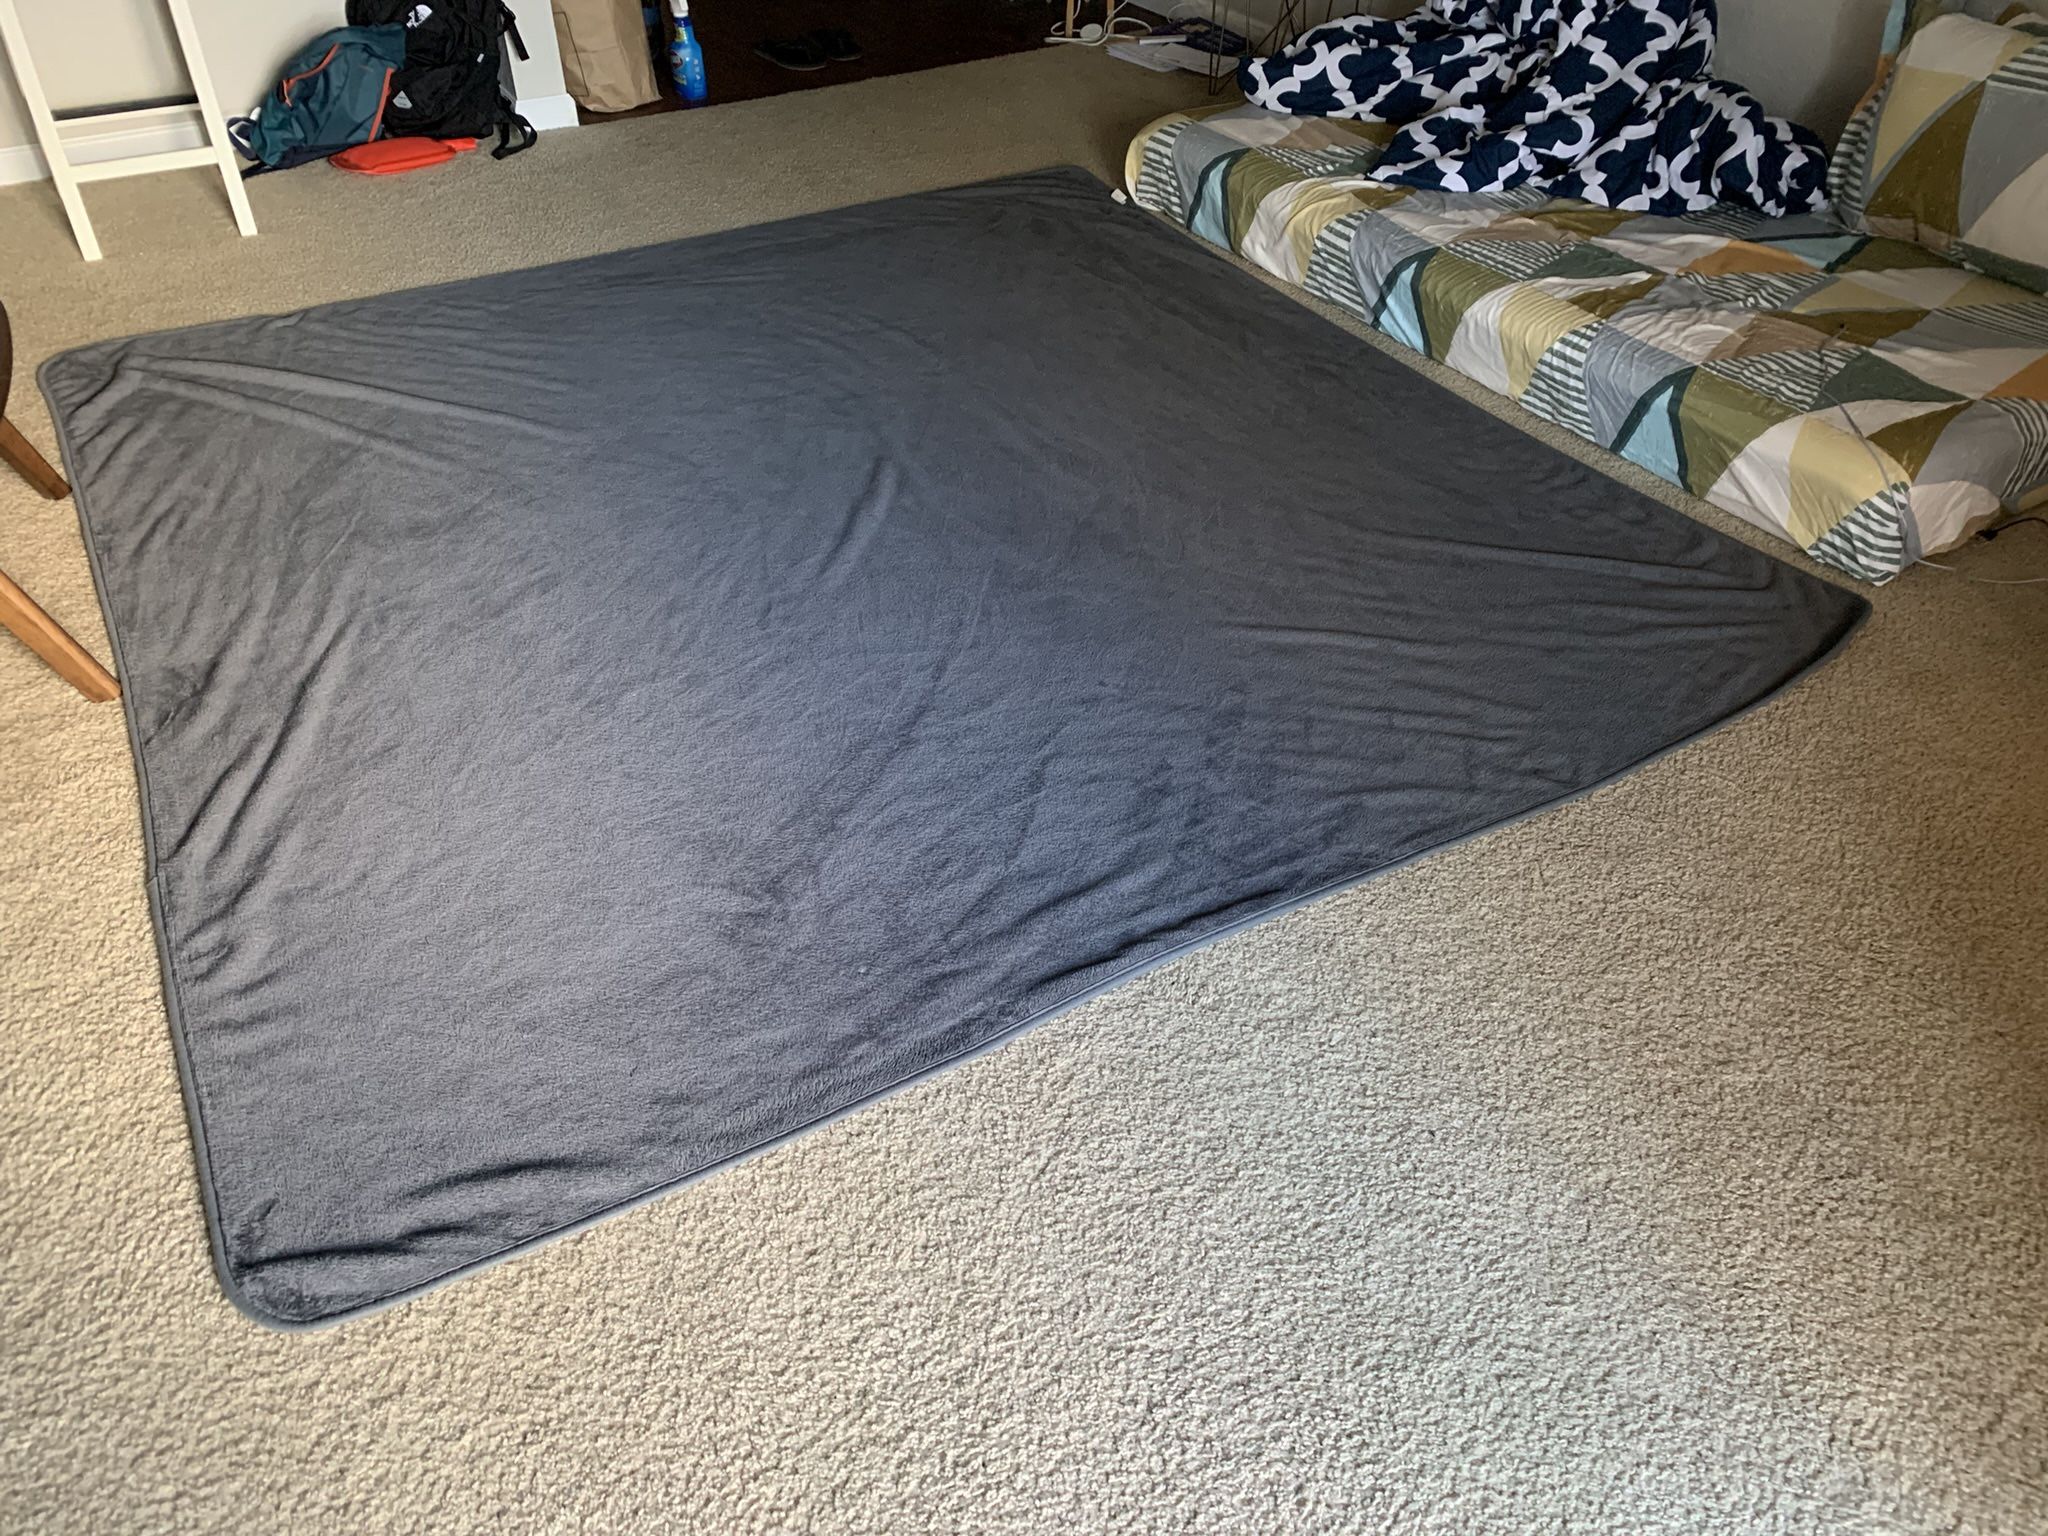 Throw Blanket/Comforter - Full Size